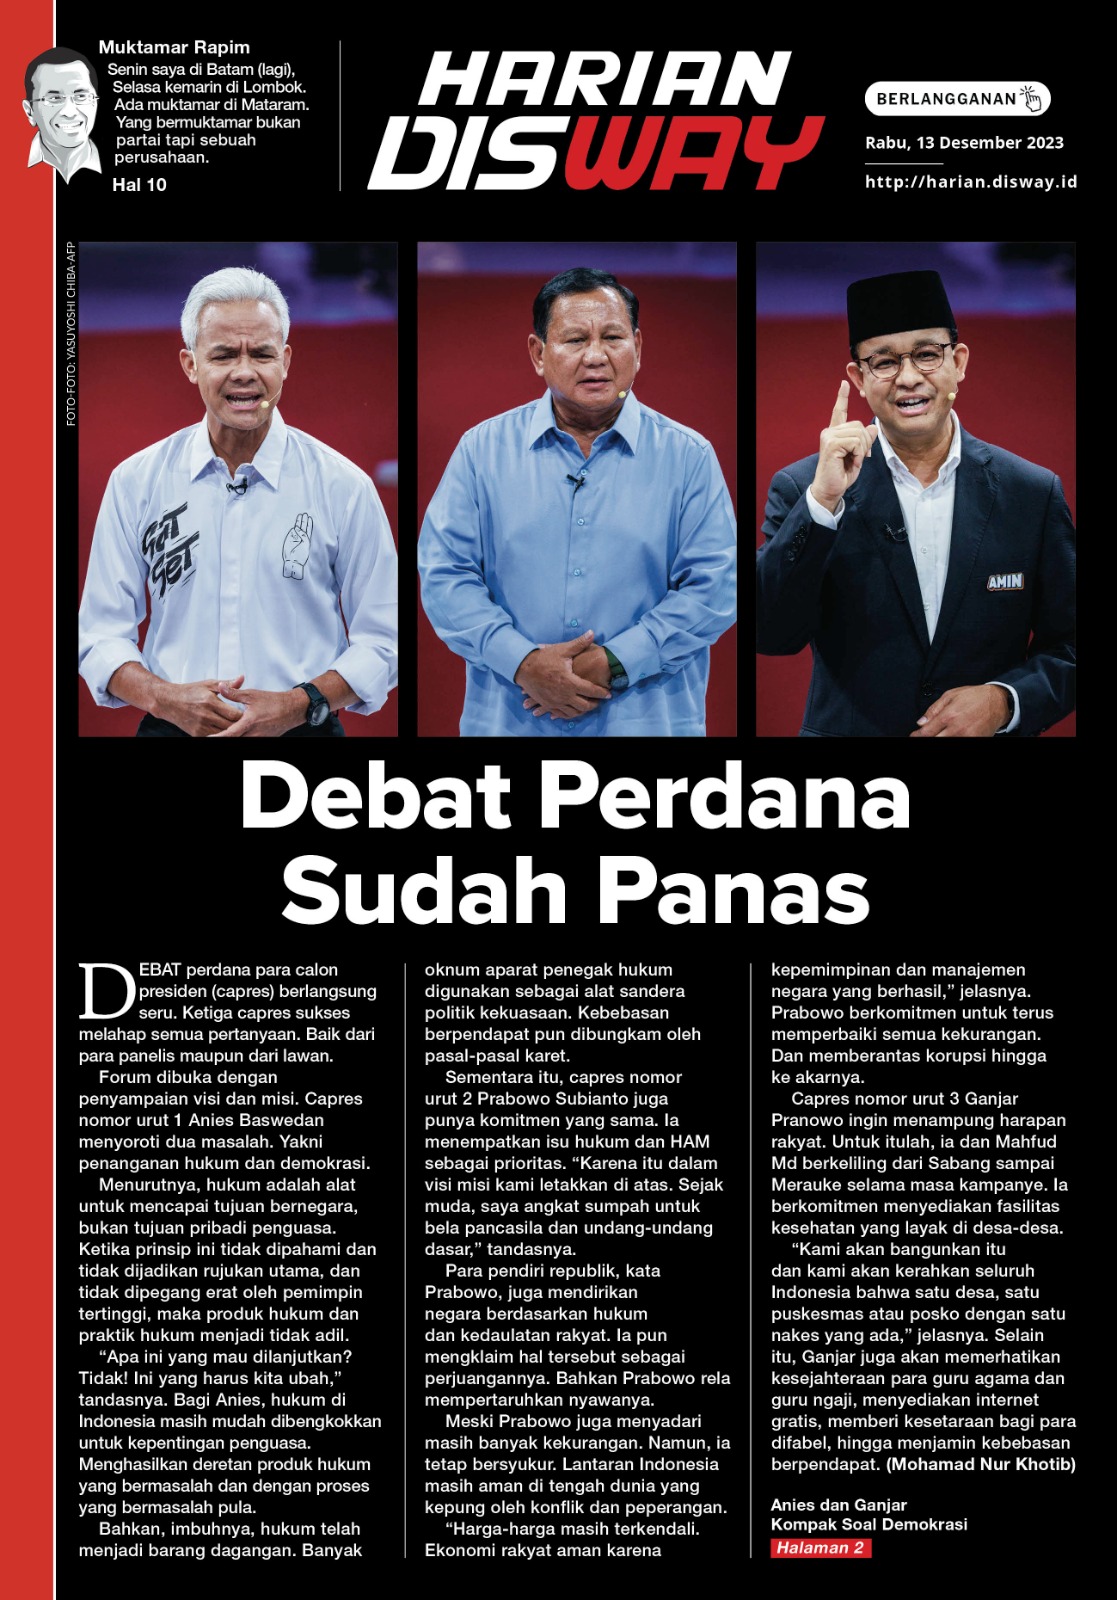 Debat Perdana Sudah Panas